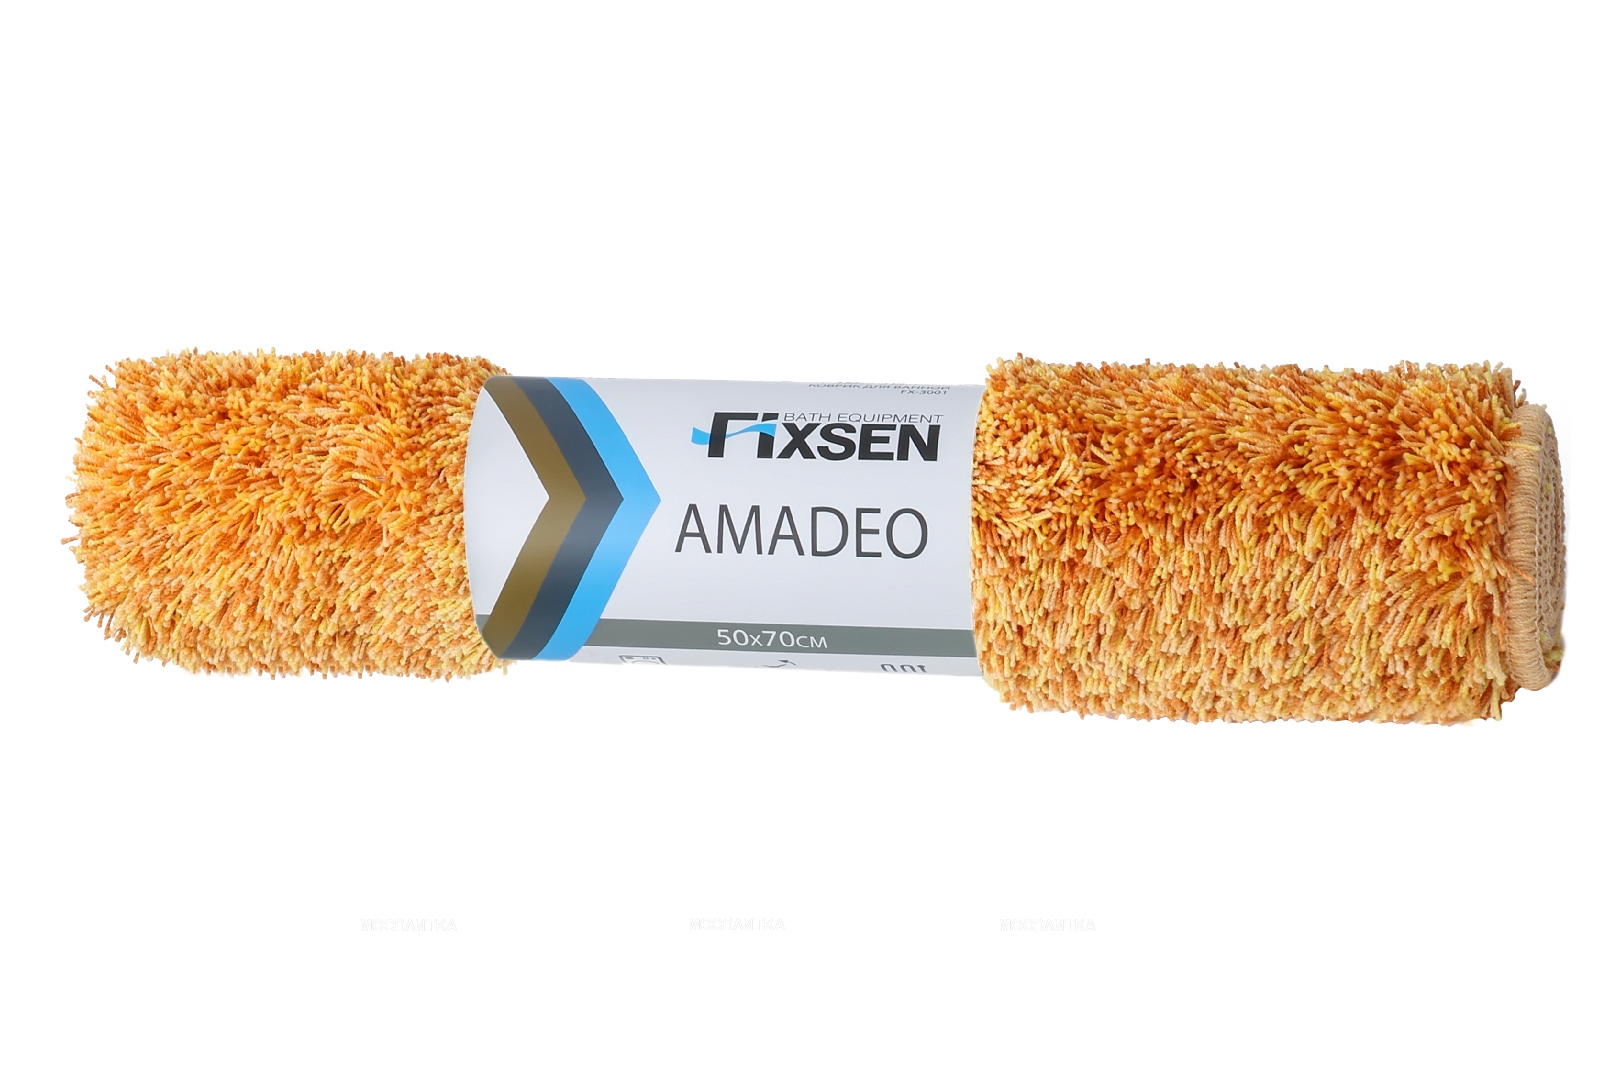 Коврик для ванной Fixsen Amadeo 1-ый оранжевый, 50х70 см. FX-3001G - изображение 3